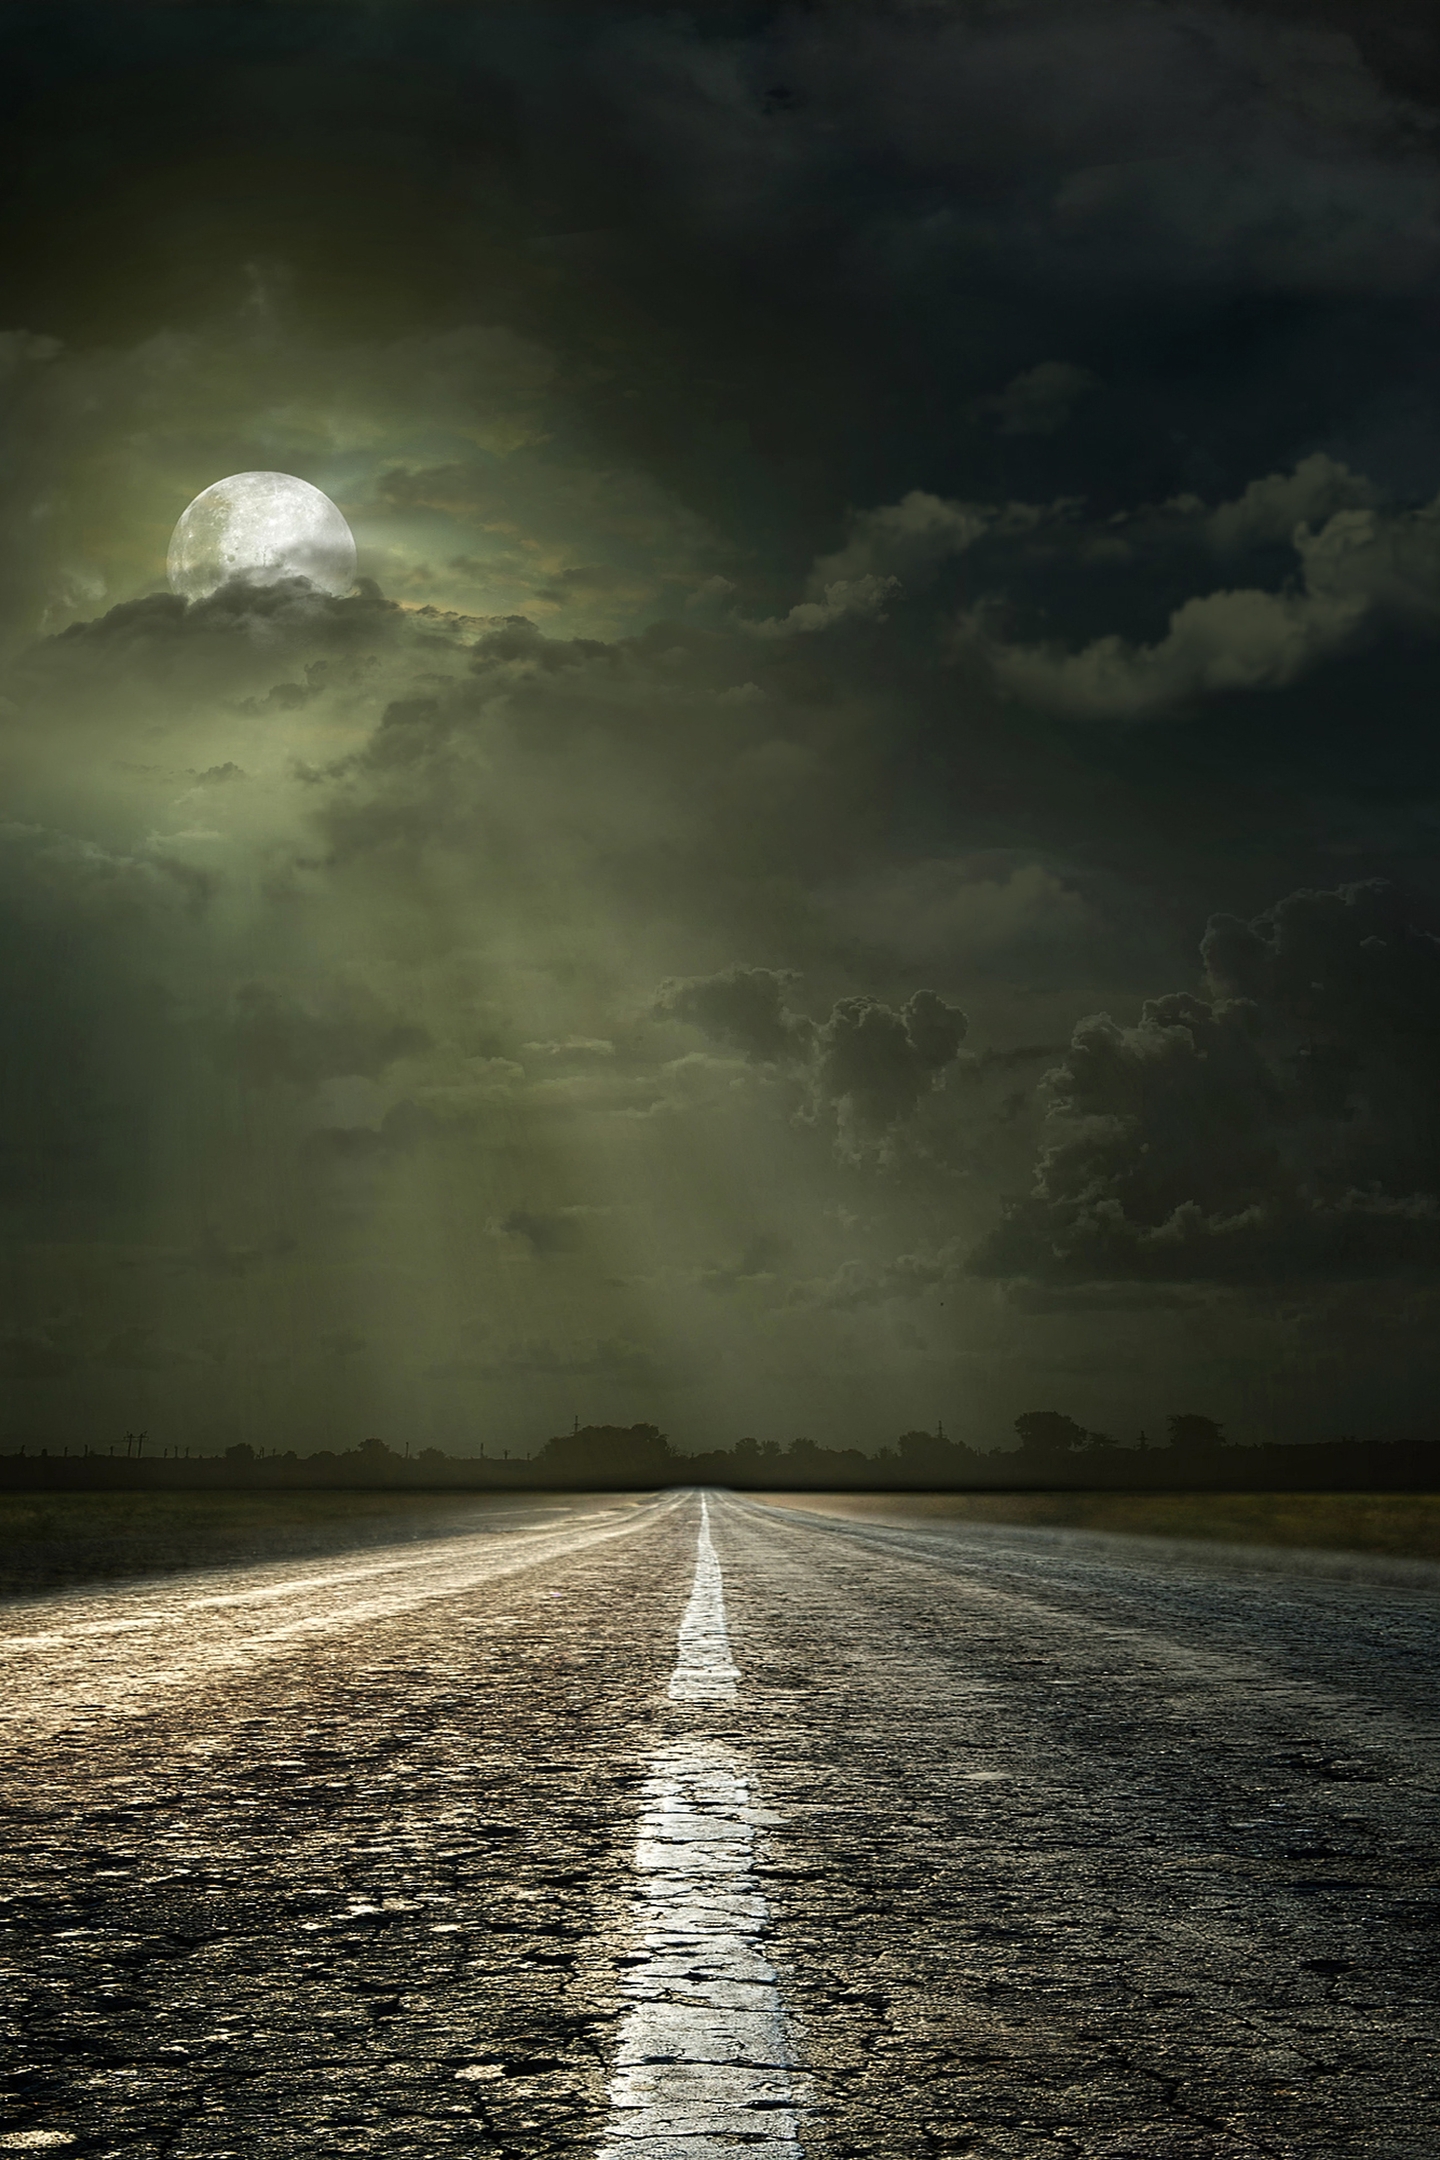 Картинка: Пейзаж, дорога, ночь, даль, лунный свет, луна, облака, горизонт, ночное небо